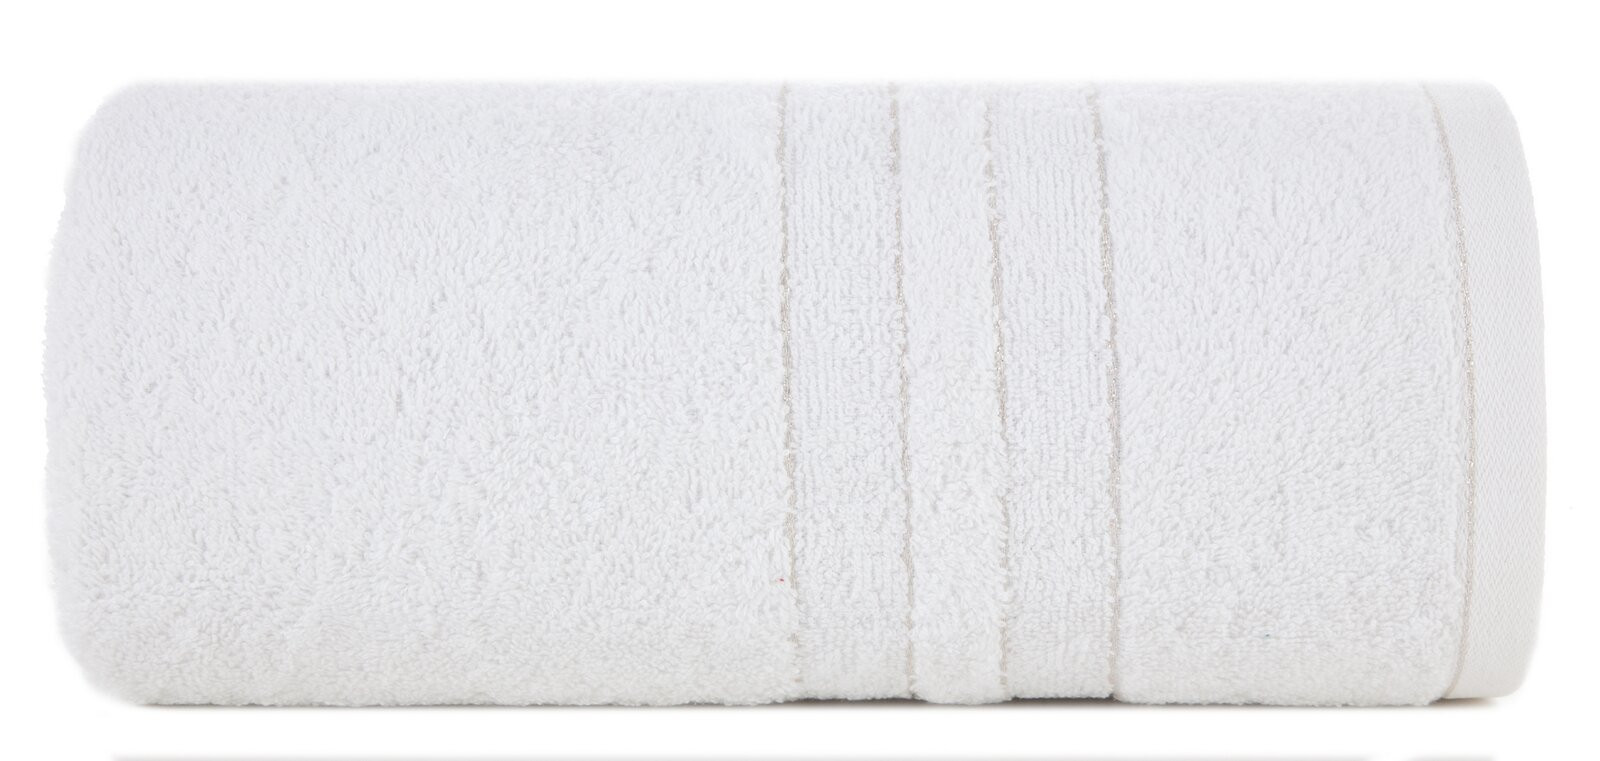 Sada ručníků GALA 03 bílá